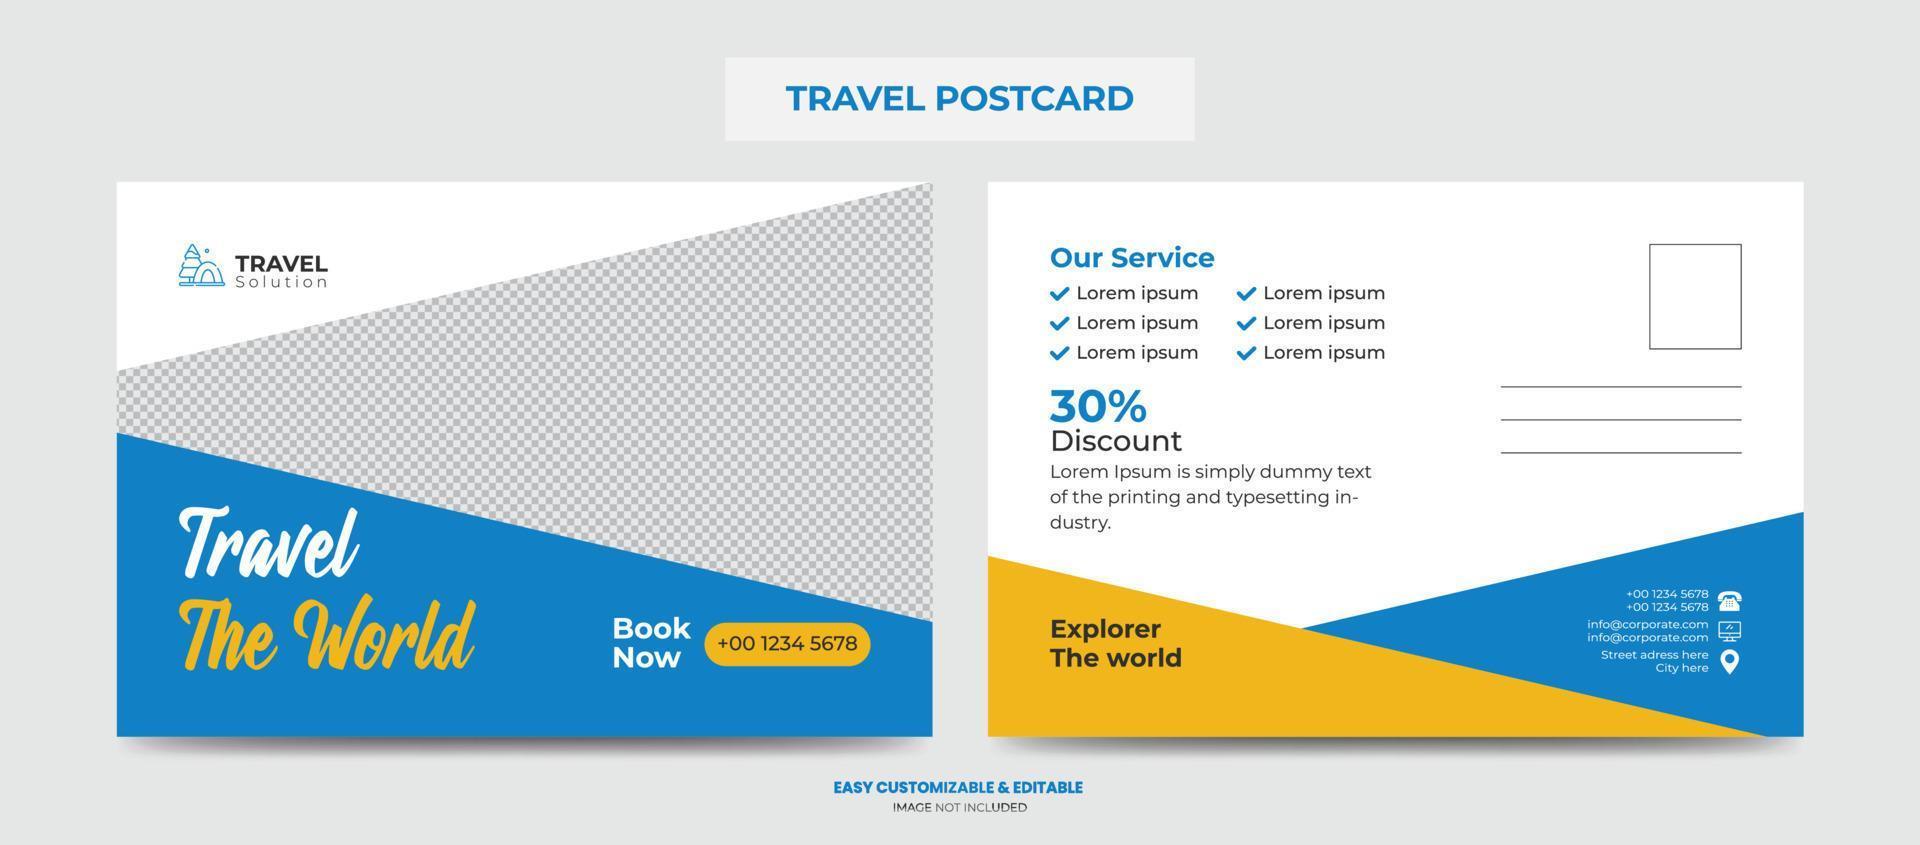 modelo de design de cartão postal de viagens modernas. cartão postal da agência de viagens vetor